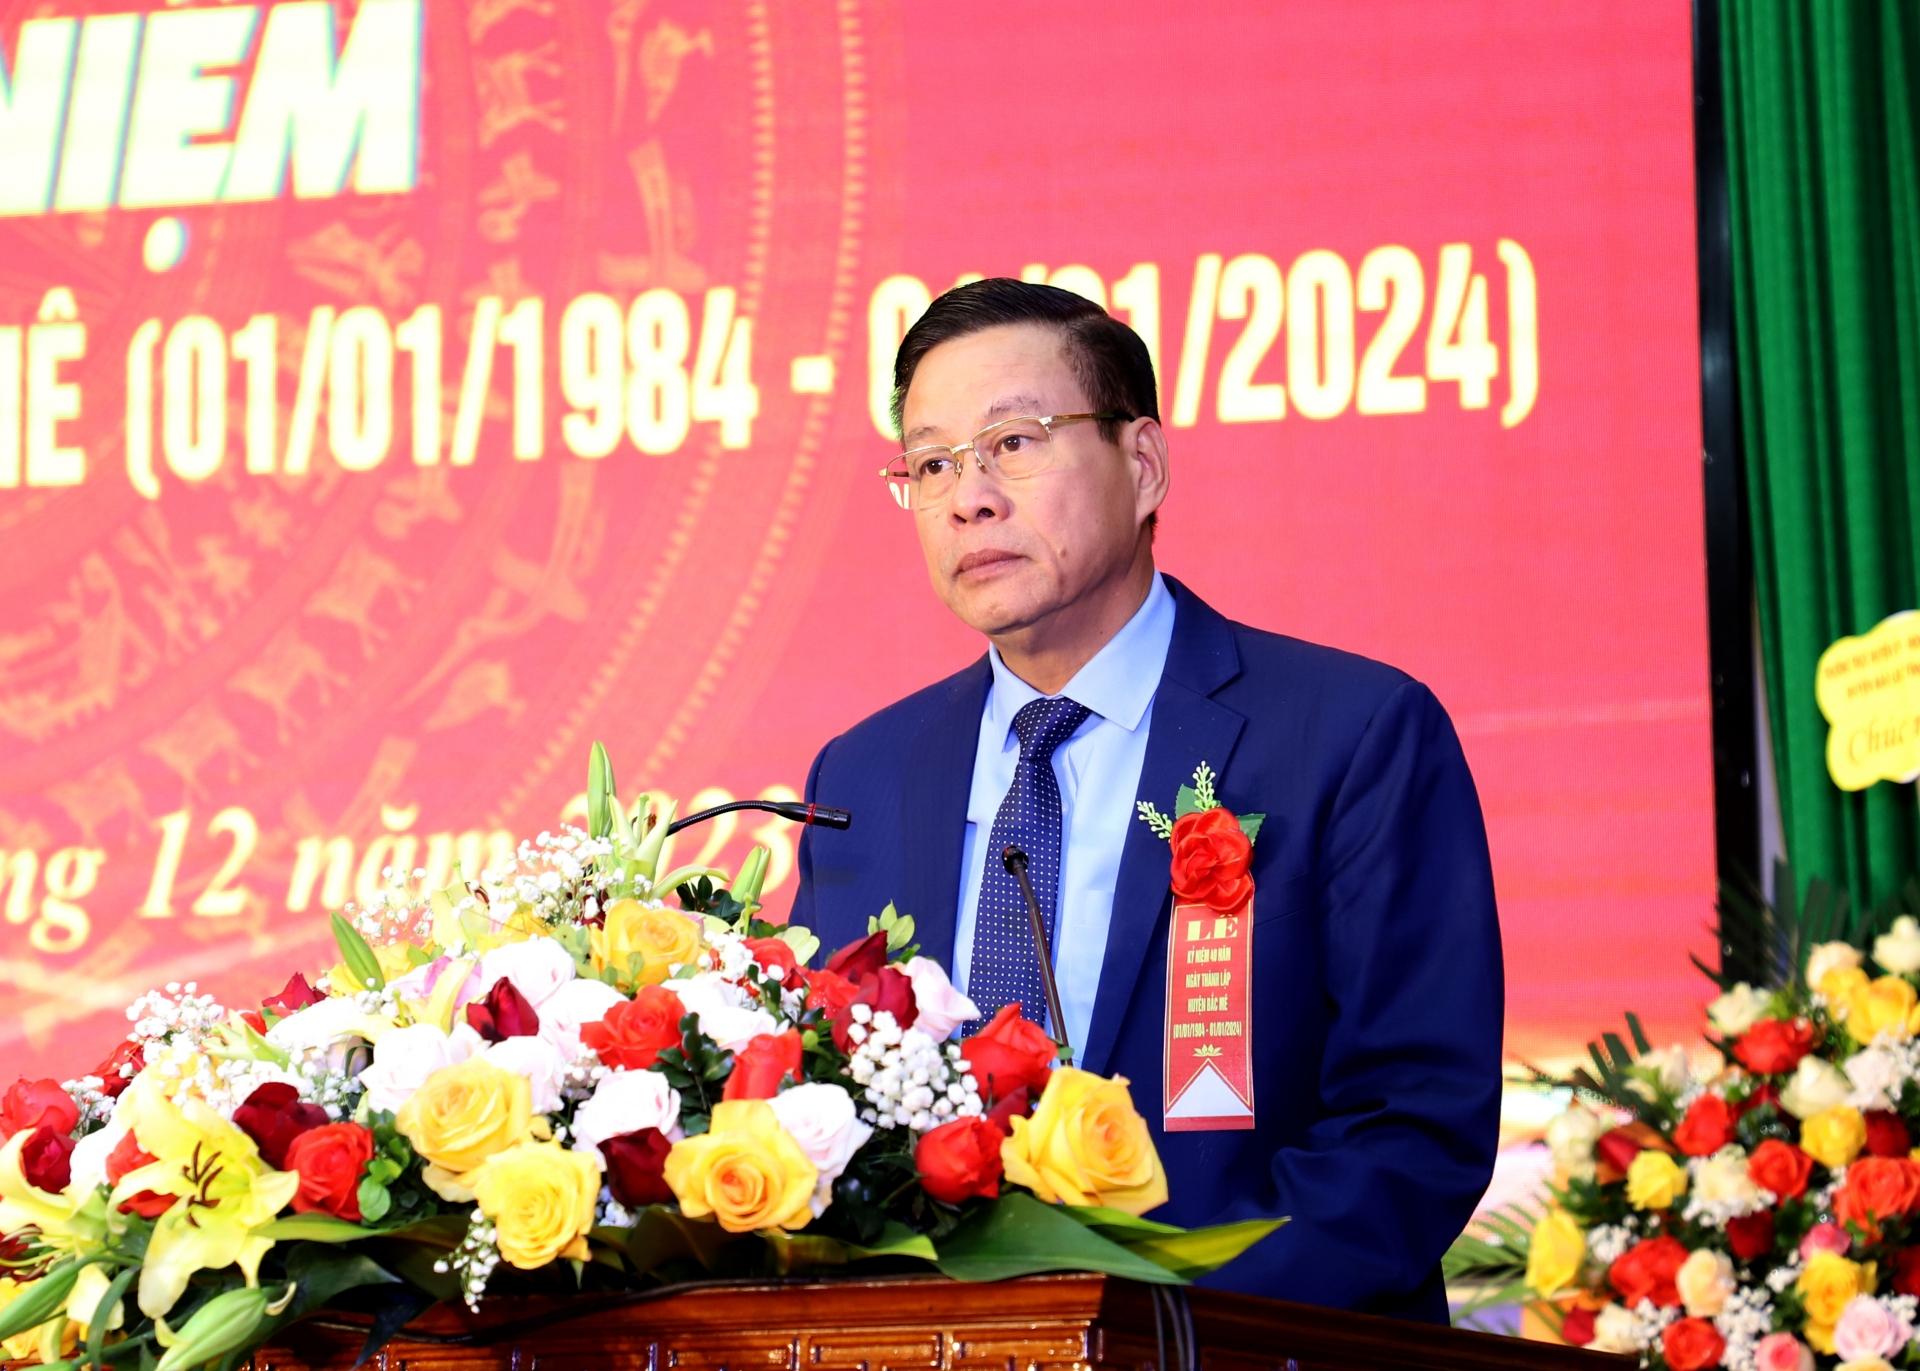 Chủ tịch UBND tỉnh Nguyễn Văn Sơn phát biểu tại buổi lễ.